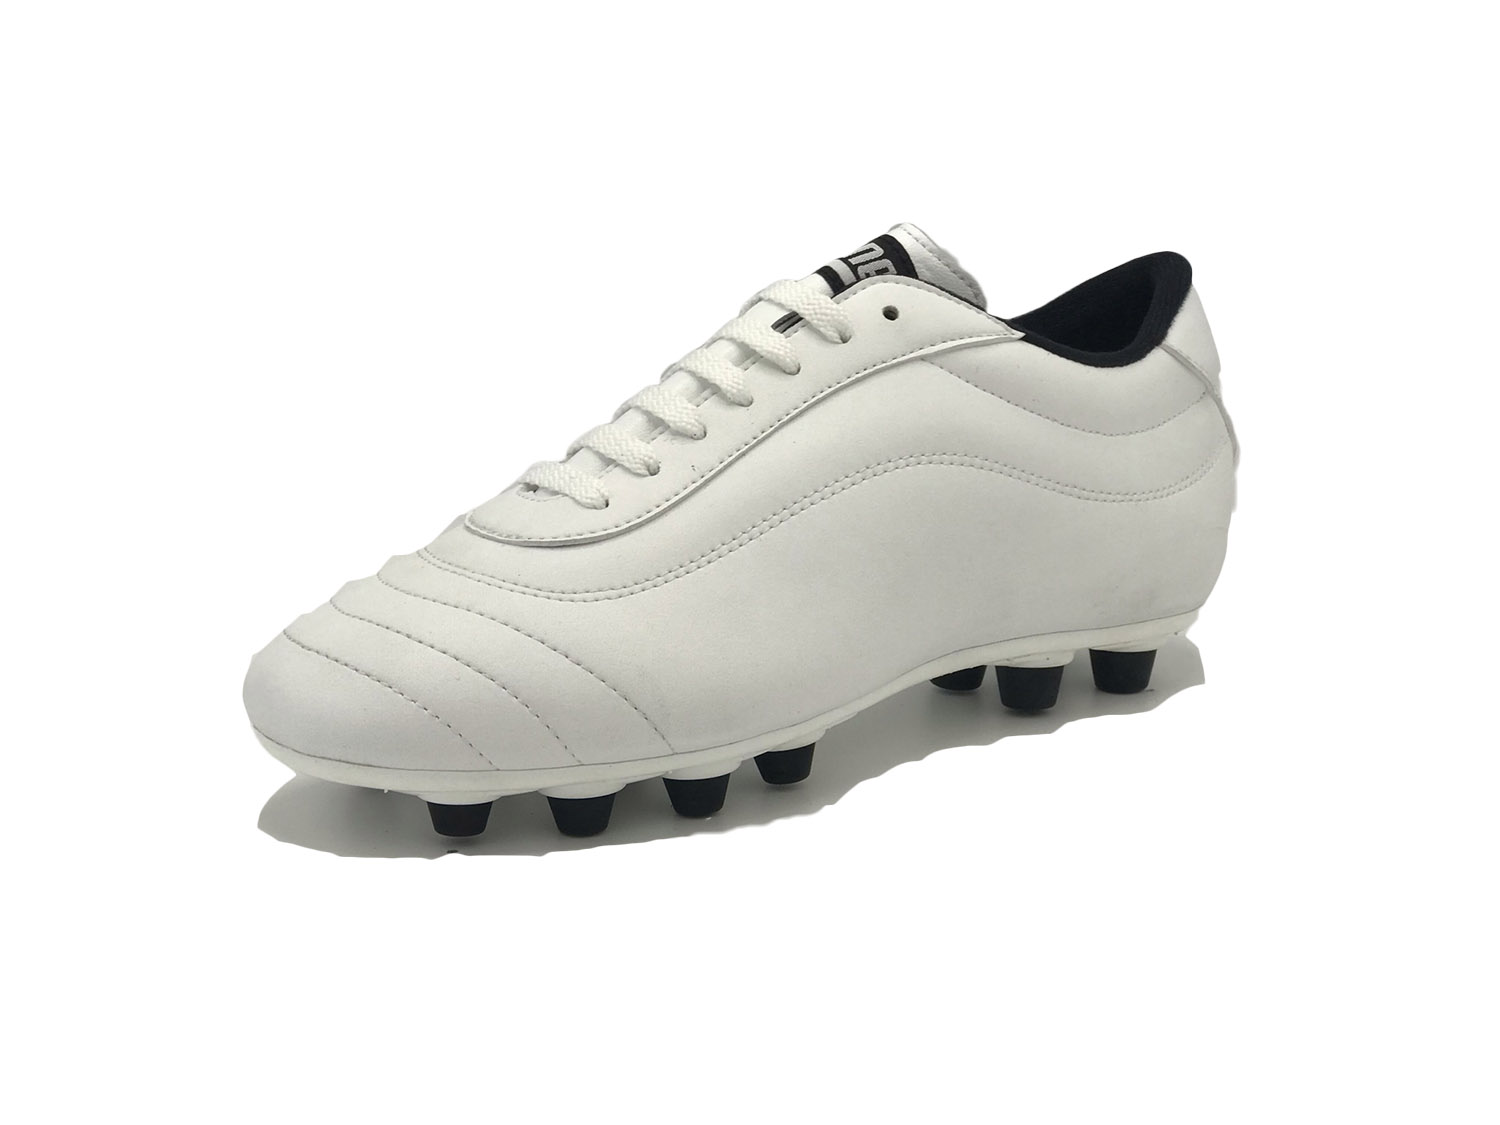 modello LEAGUE 018 bianco - DANESE scarpe calcio artigianali